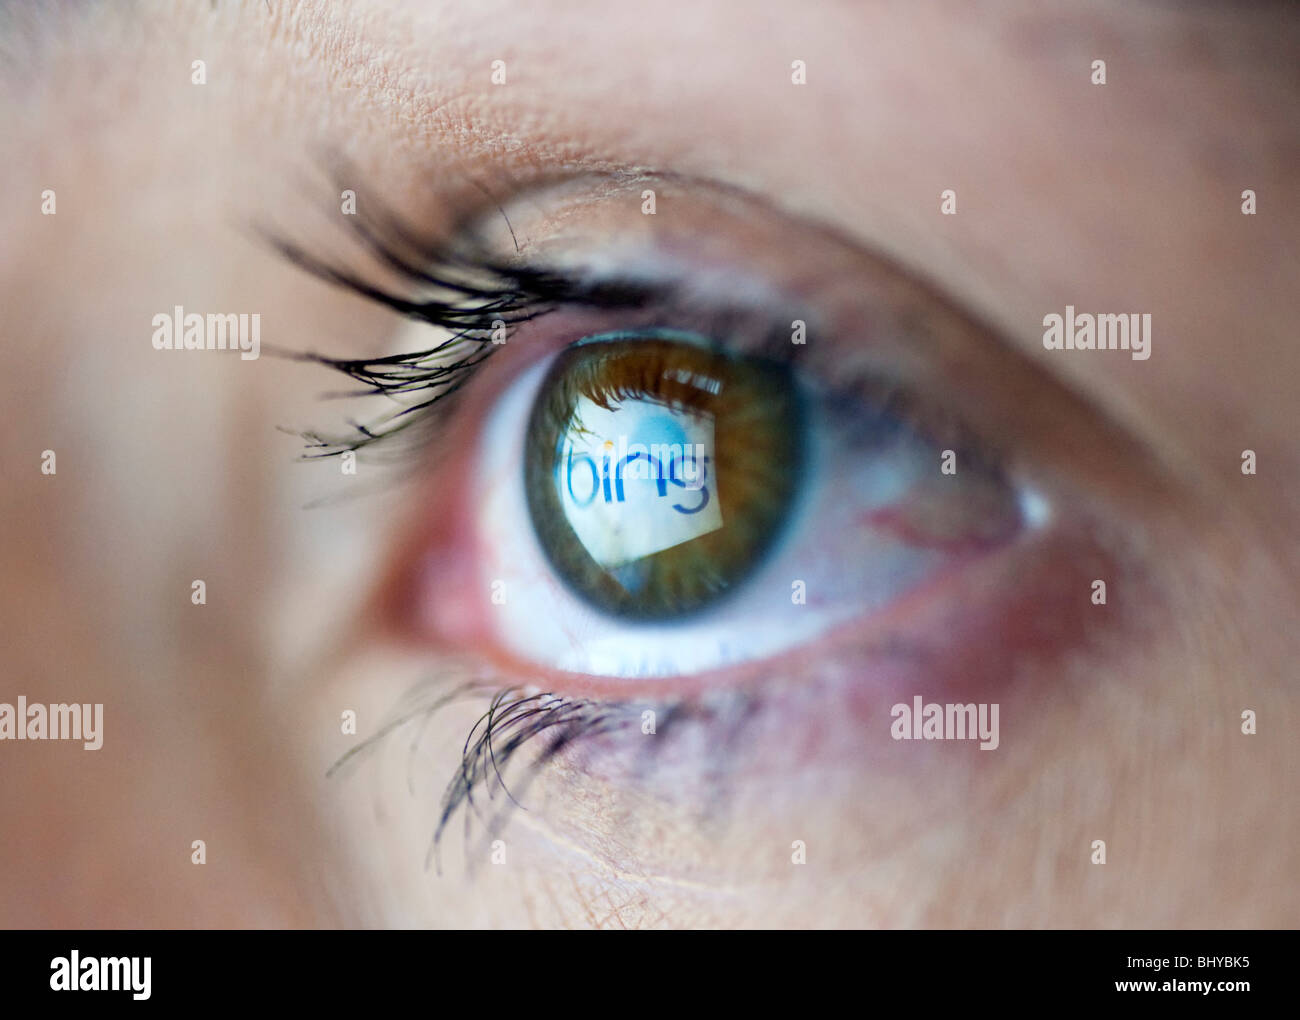 Moteur de recherche Bing de Microsoft logo du site reflète dans l'œil de l'écran de l'ordinateur de womans Banque D'Images